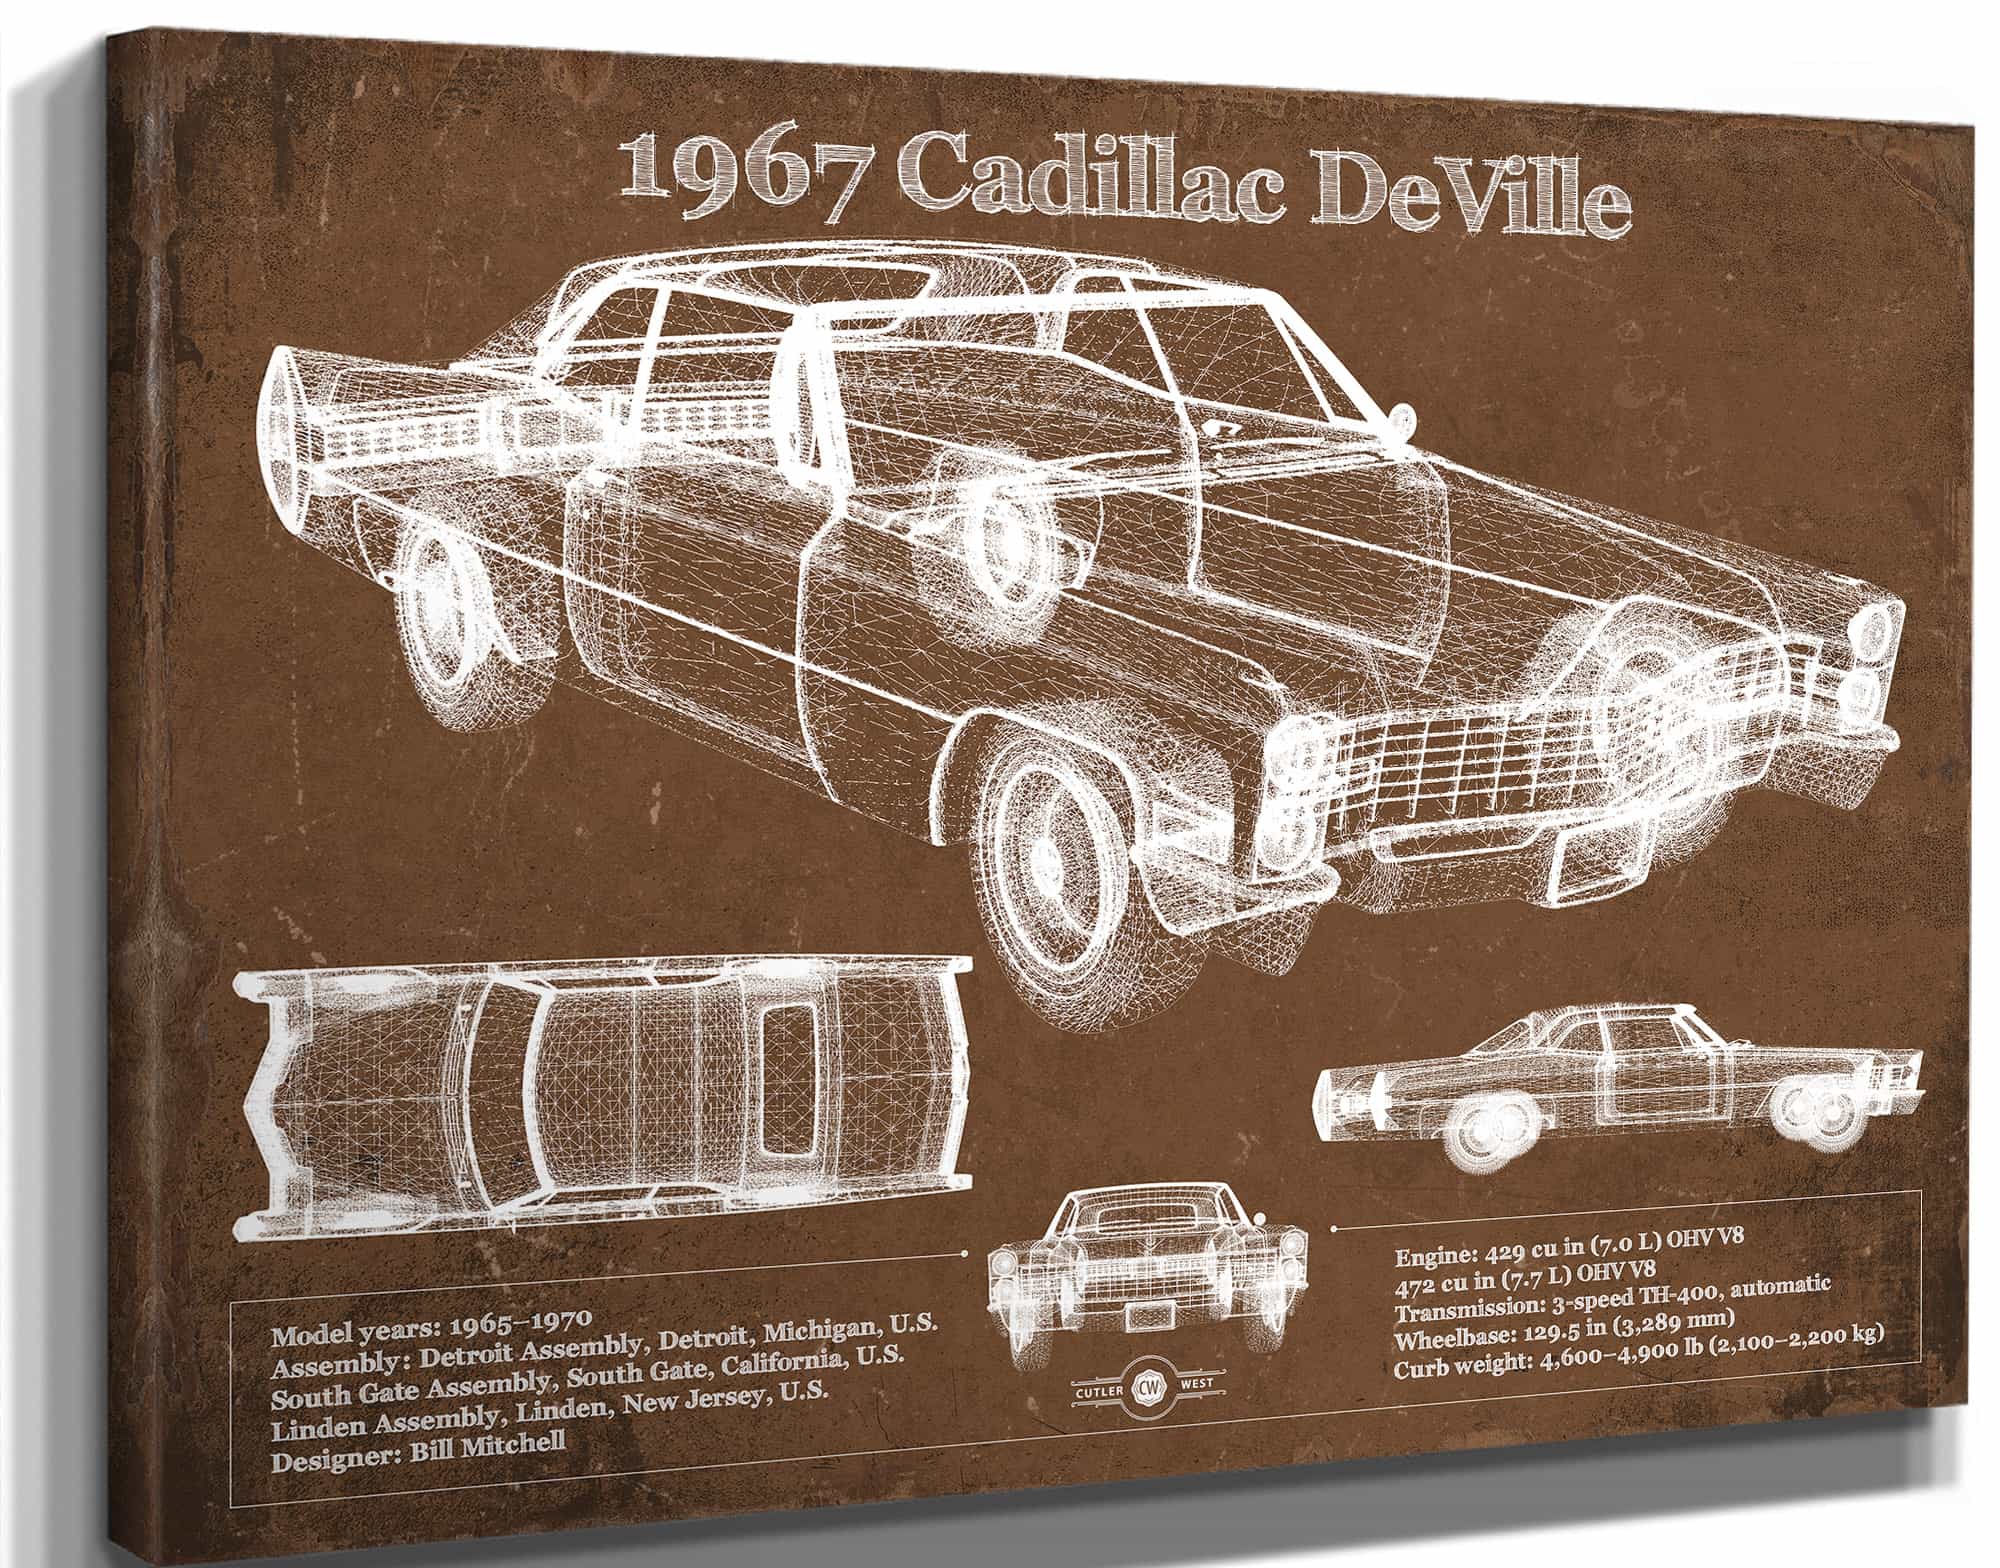 1967 Cadillac DeVille Blueprint Vintage Auto Print